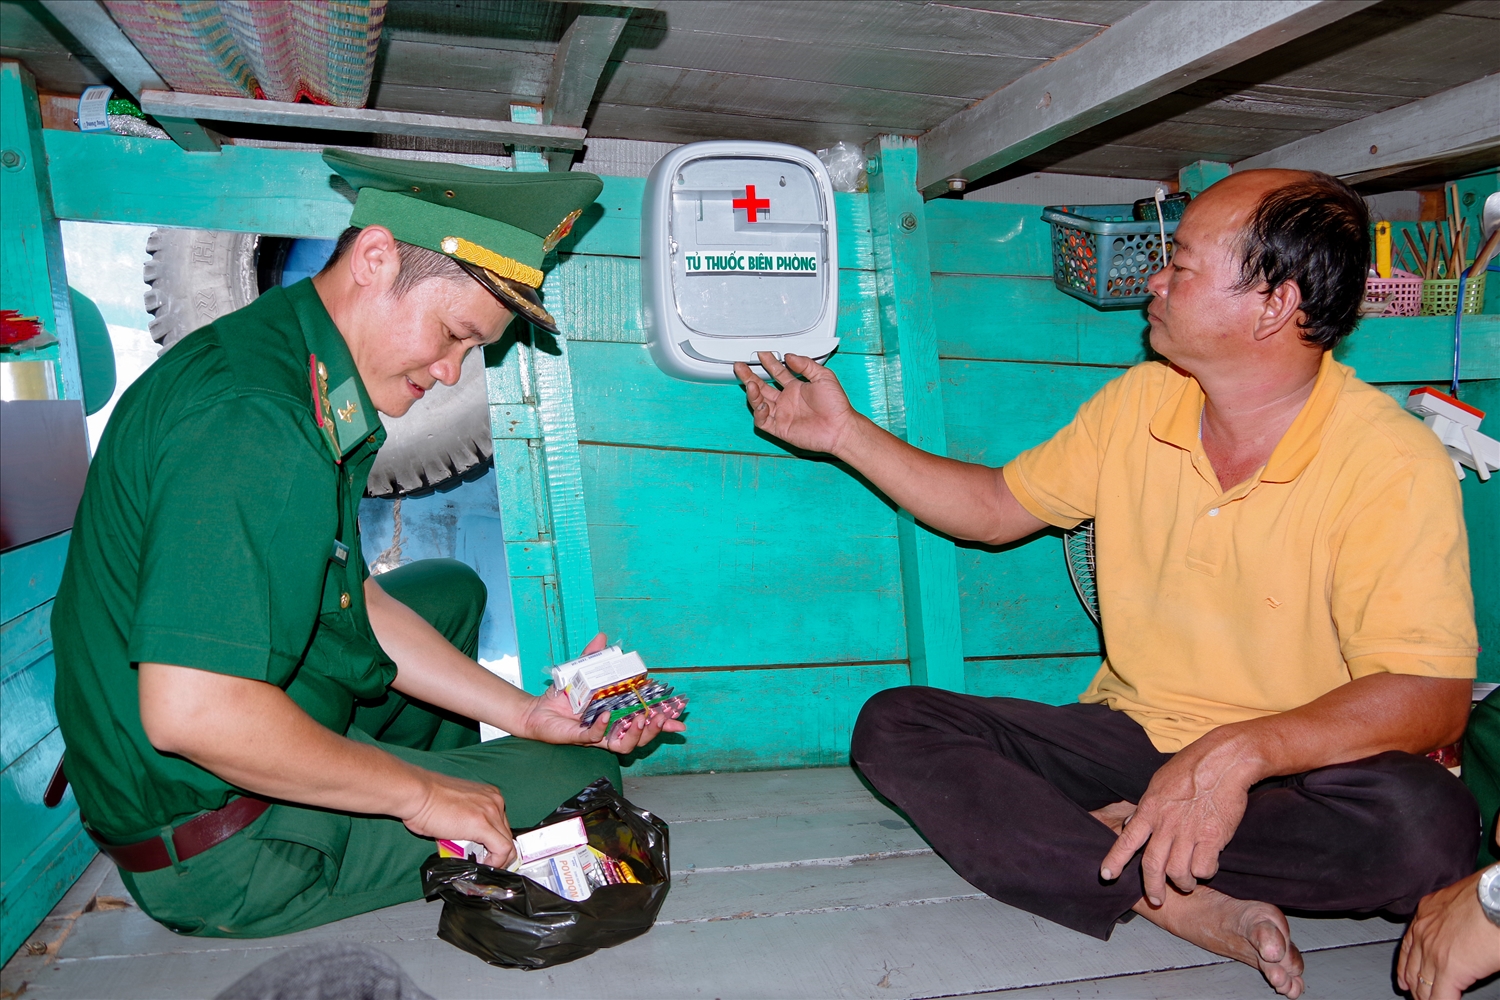 Cán bộ Hải đội 2 Biên phòng, Bộ đội Biên phòng Sóc Trăng lắp đặt tủ thuốc cho tàu cá ngư dân. Ảnh: Hoàng Đoán